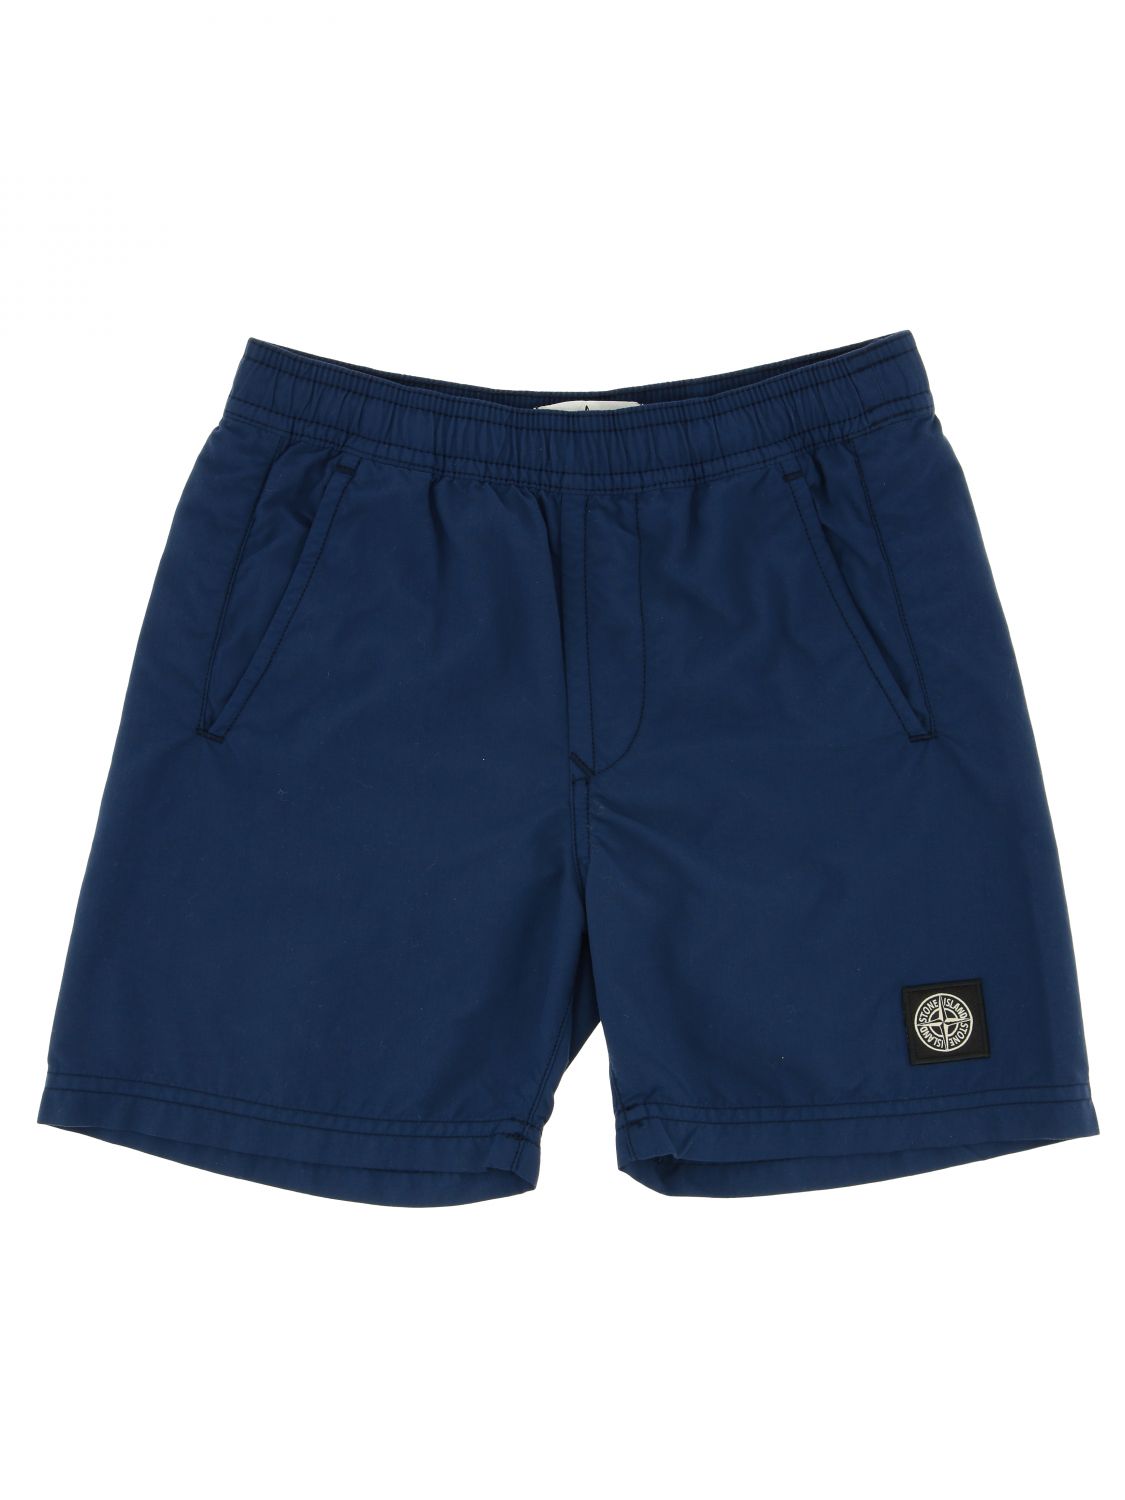 Clip vlinder Afbreken Zijn bekend STONE ISLAND JUNIOR: shorts for boys - Blue | Stone Island Junior shorts  7216B0414 online on GIGLIO.COM